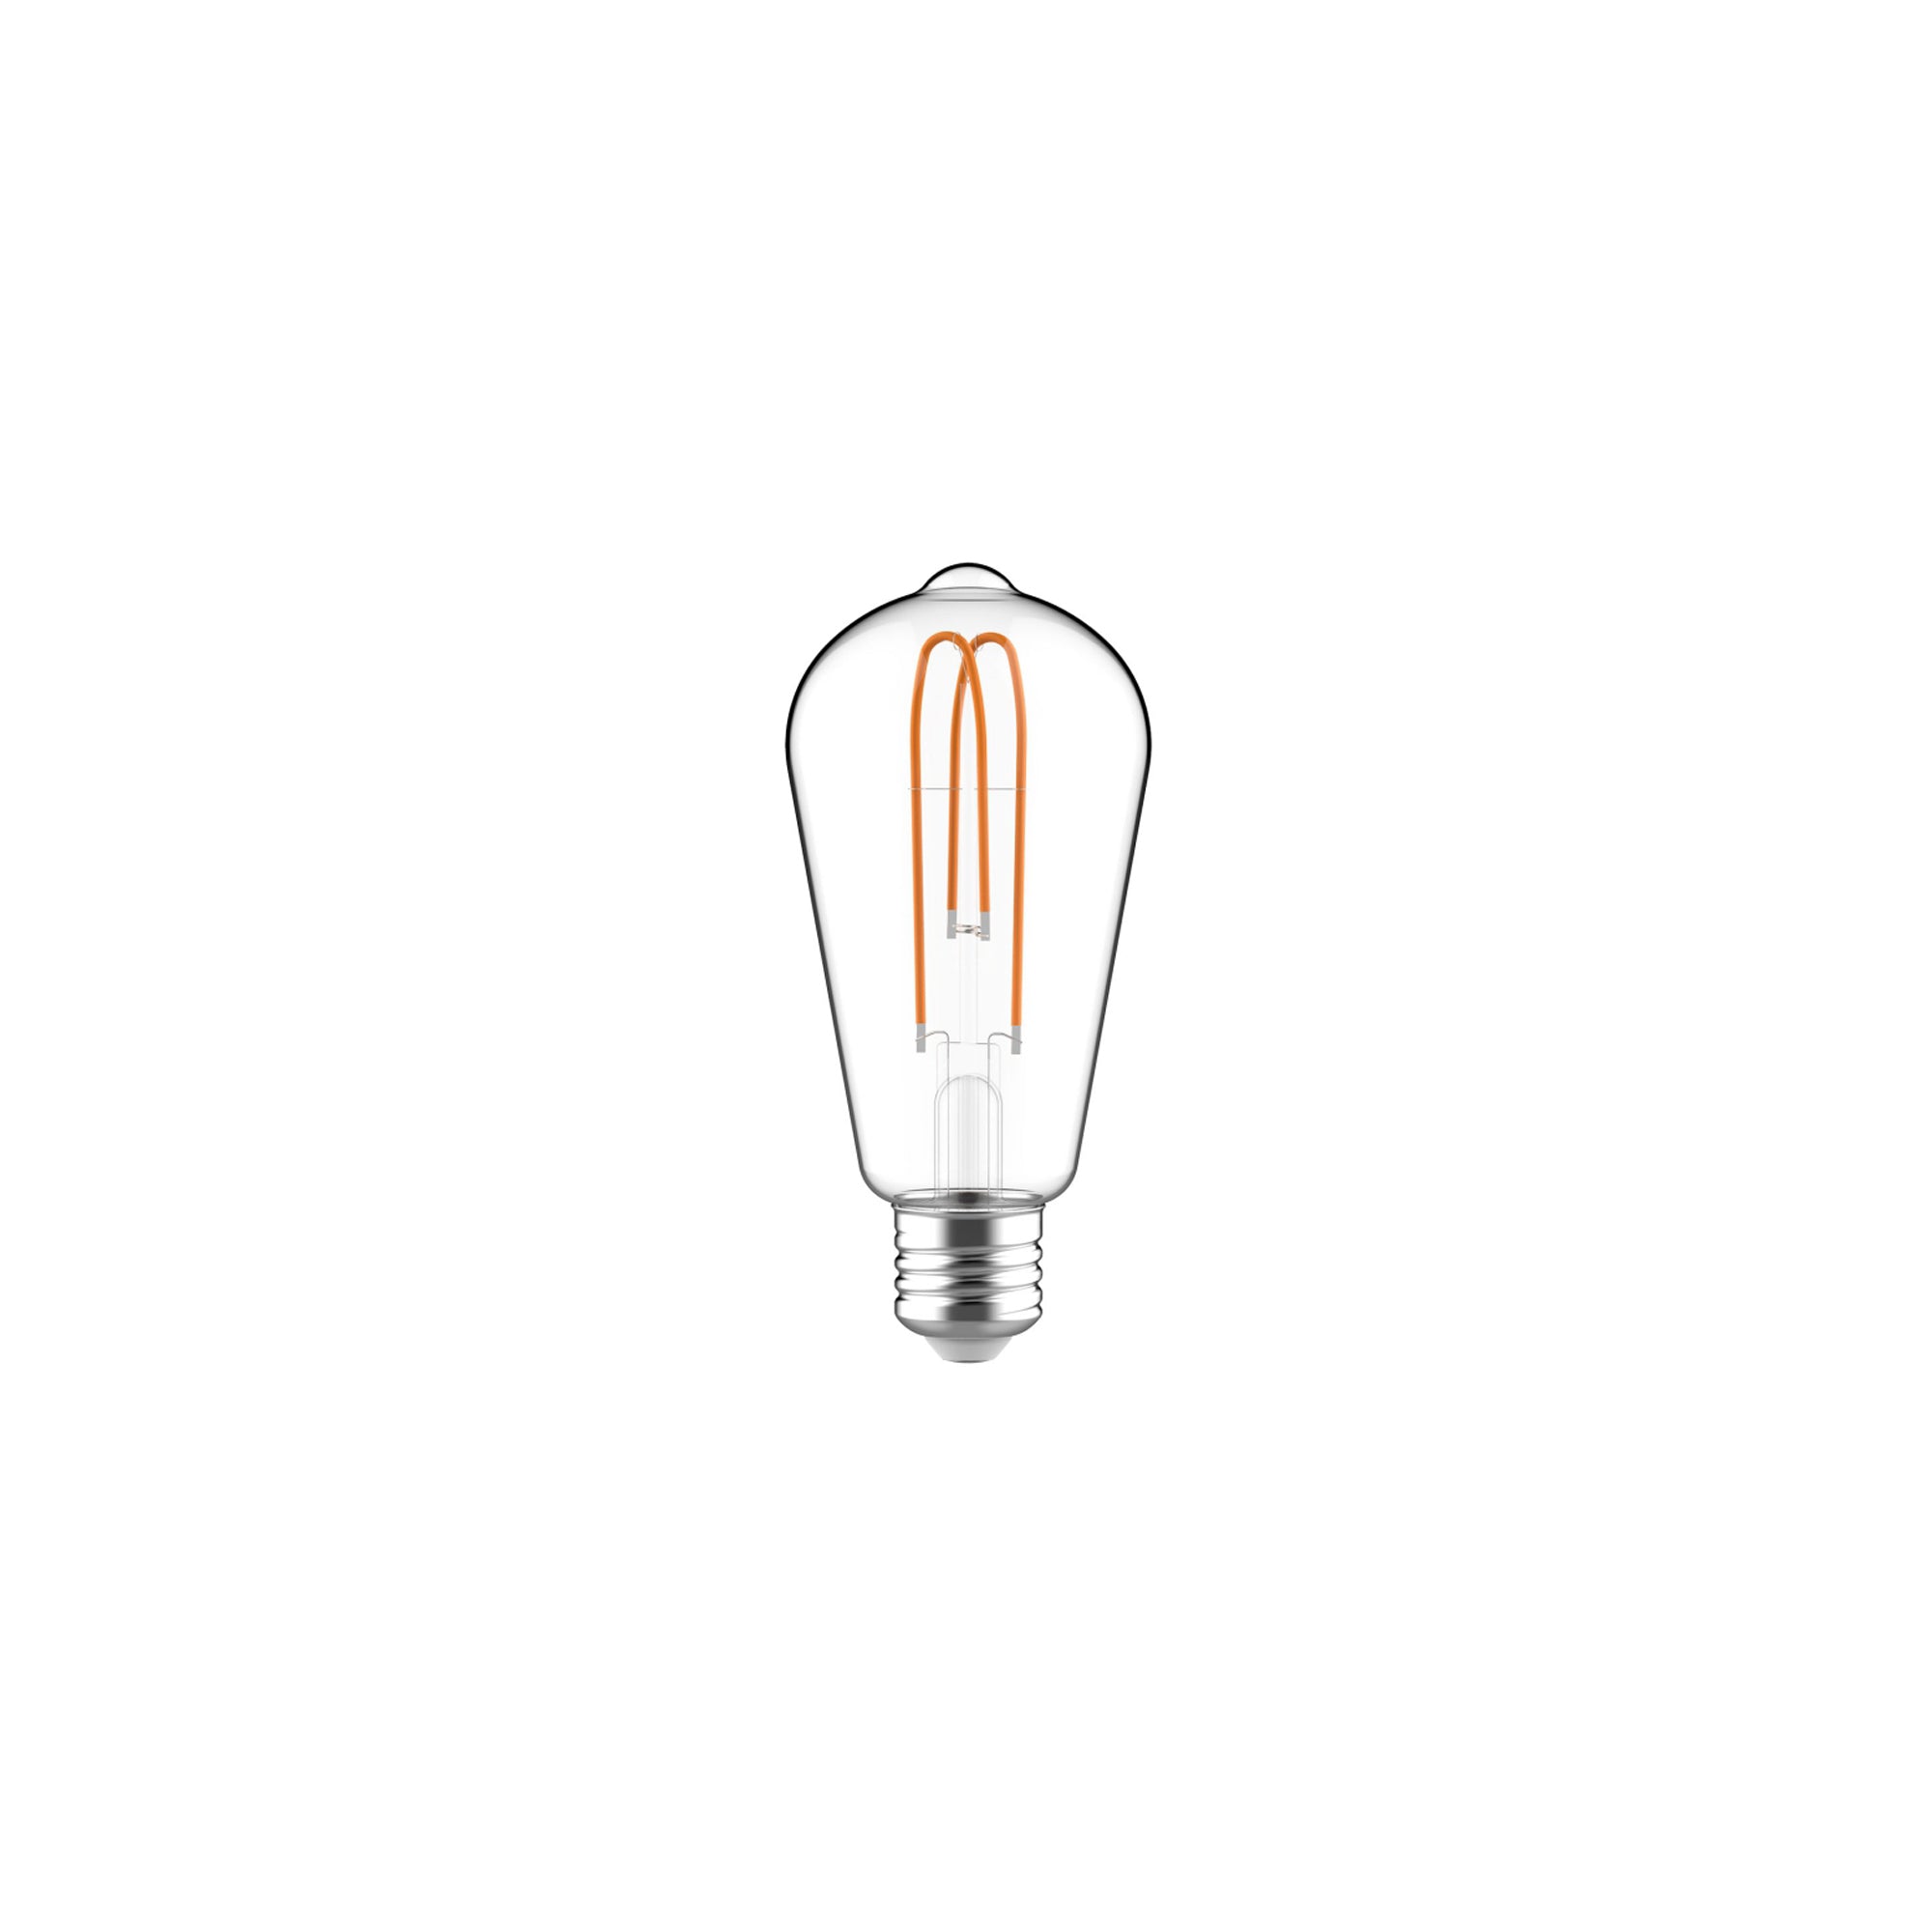 NOUVEAU - Ampoule DEL Edison classique - PLOG-IT